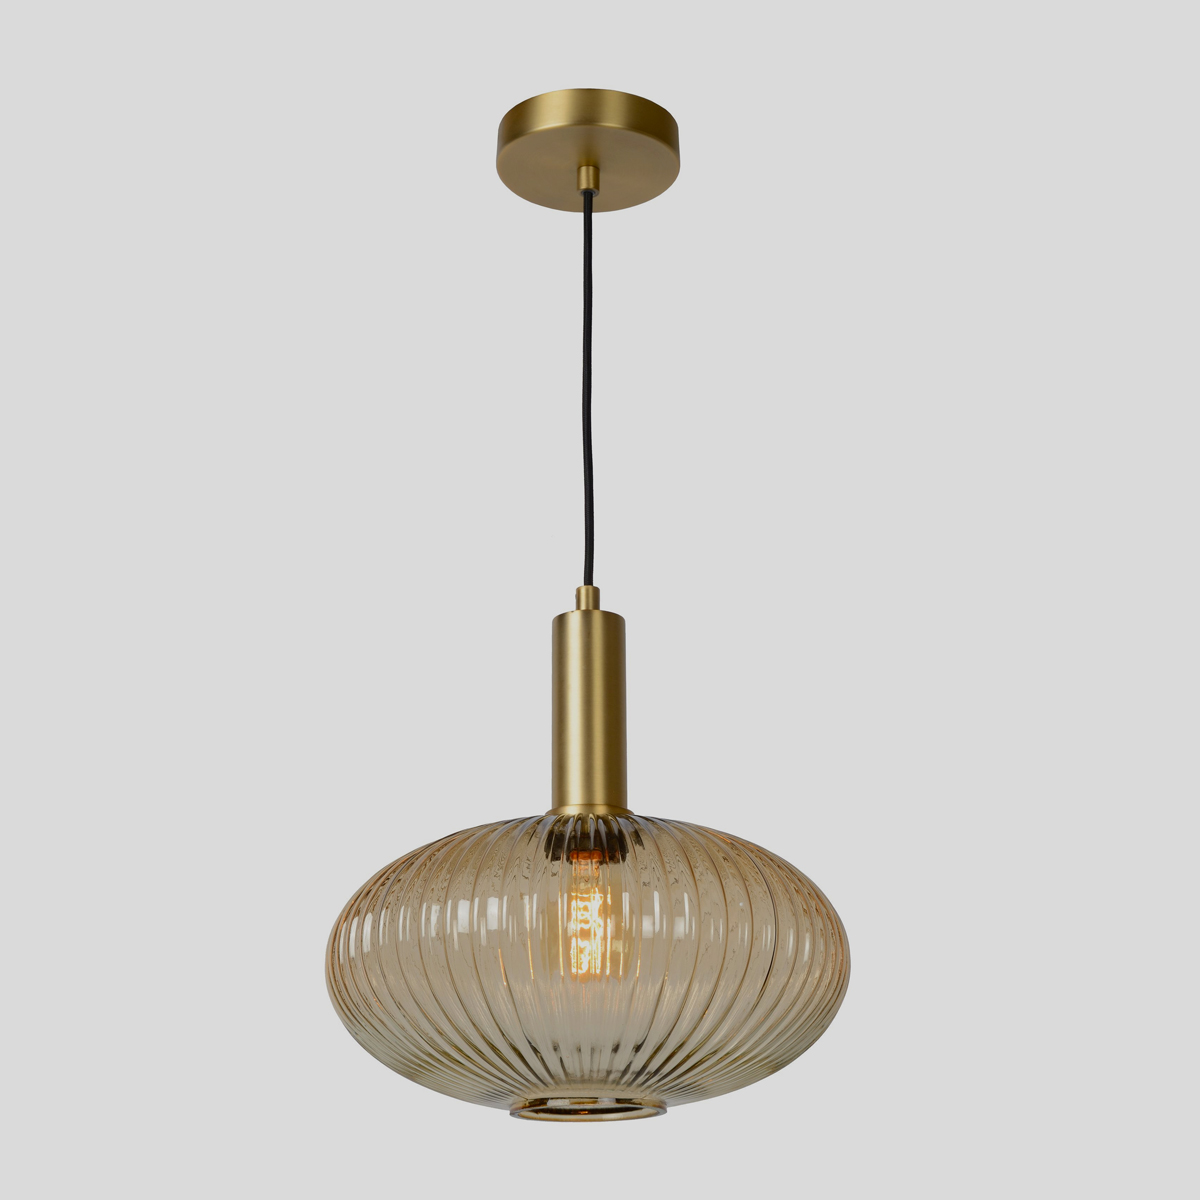 Deze cilindervormige lamp ziet er geraffineerd uit, dankzij het geribbelde glas en de gouden accenten. 